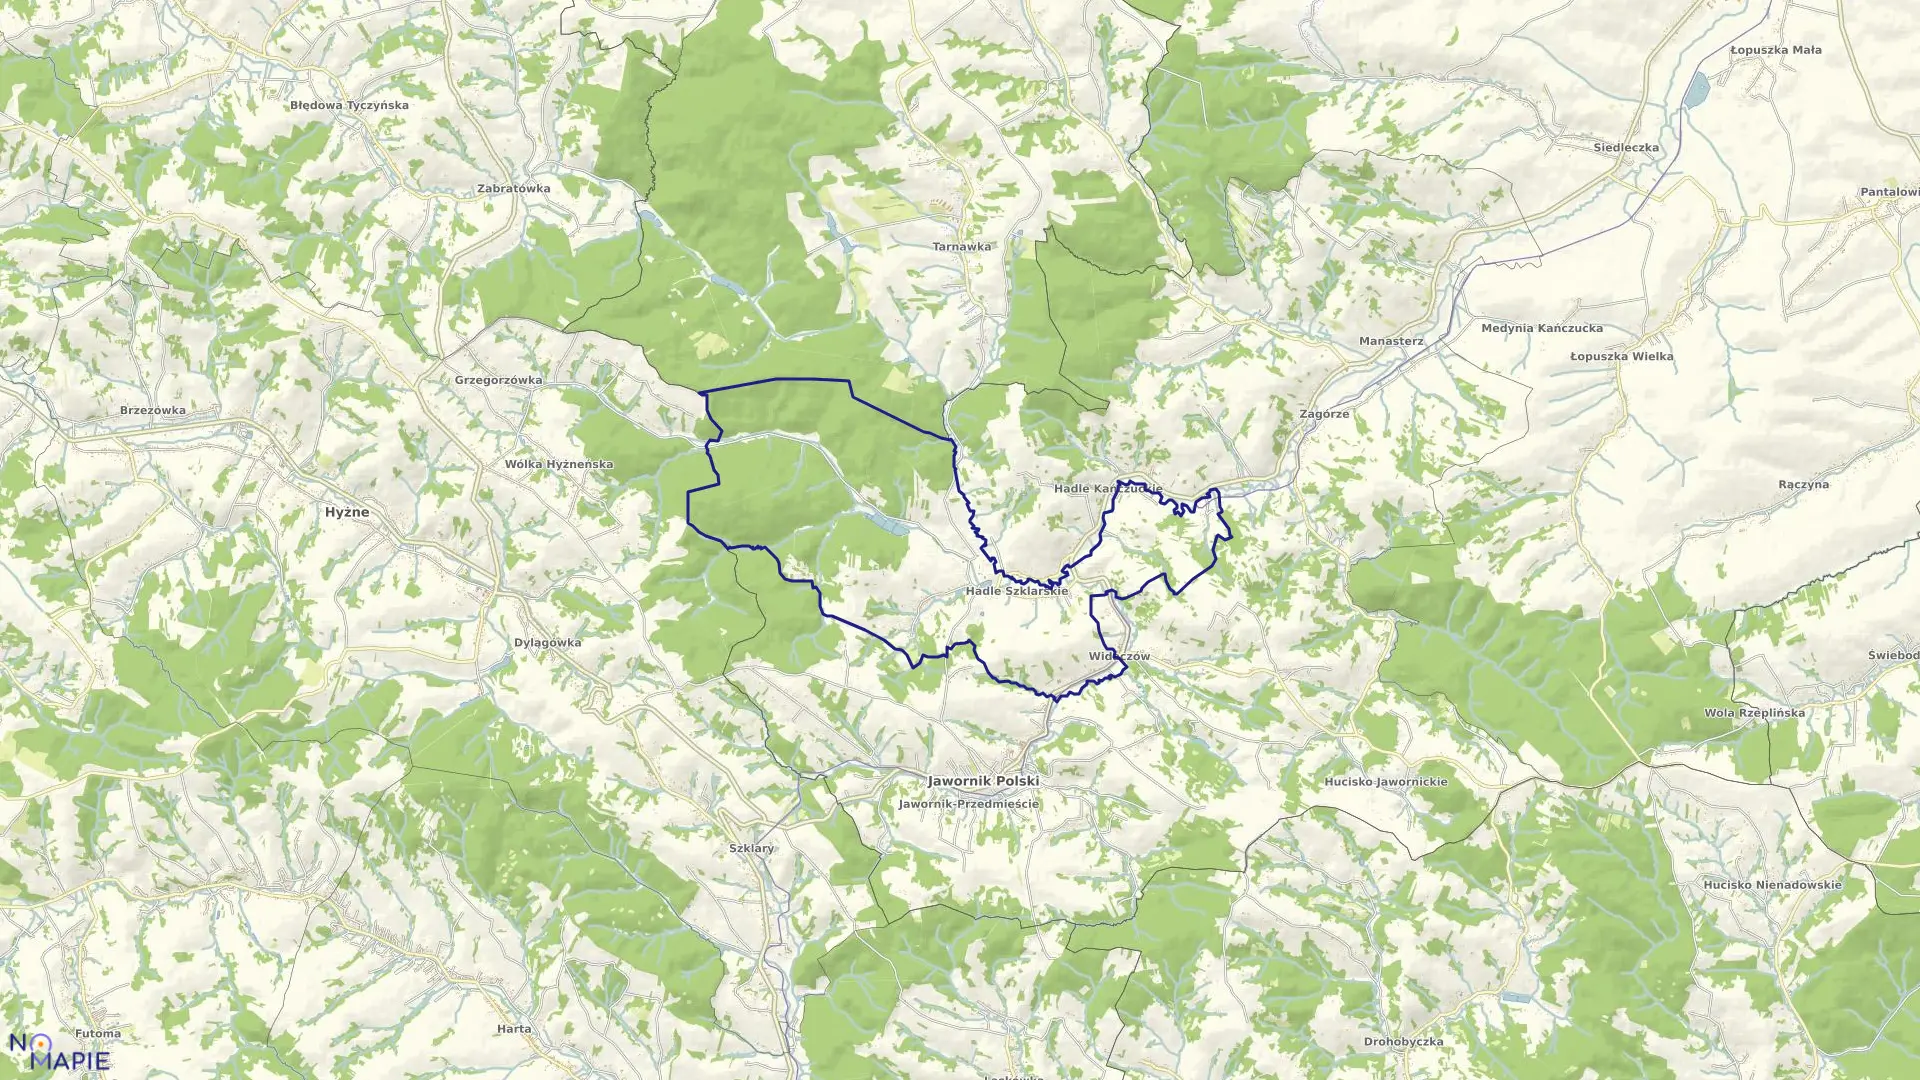 Mapa obrębu HADLE SZKLARSKIE gmina Jawornik Polski